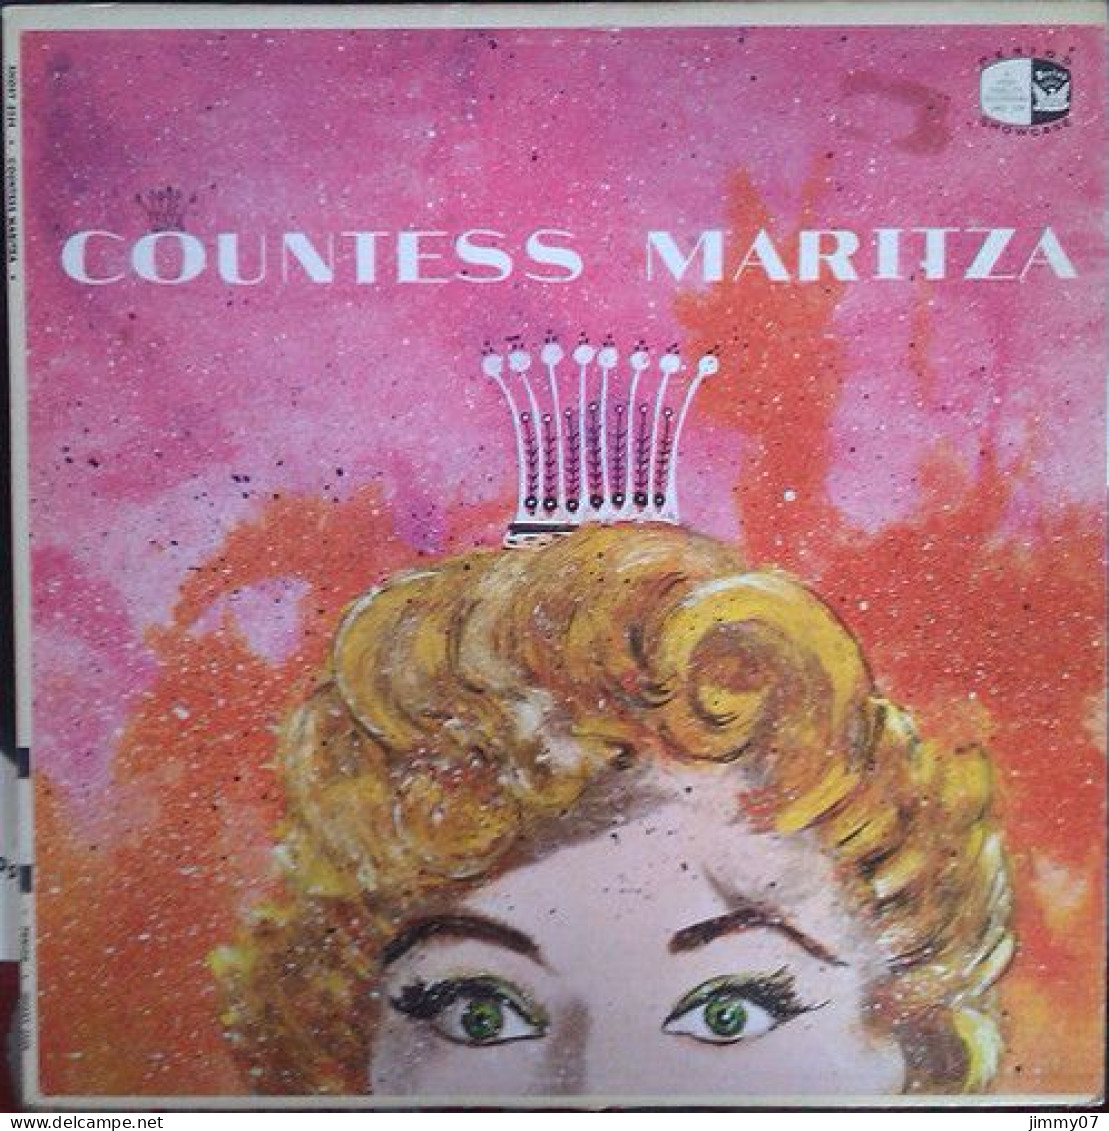 Emmerich Kalman - "Countess Maritza" (LP) - Classica